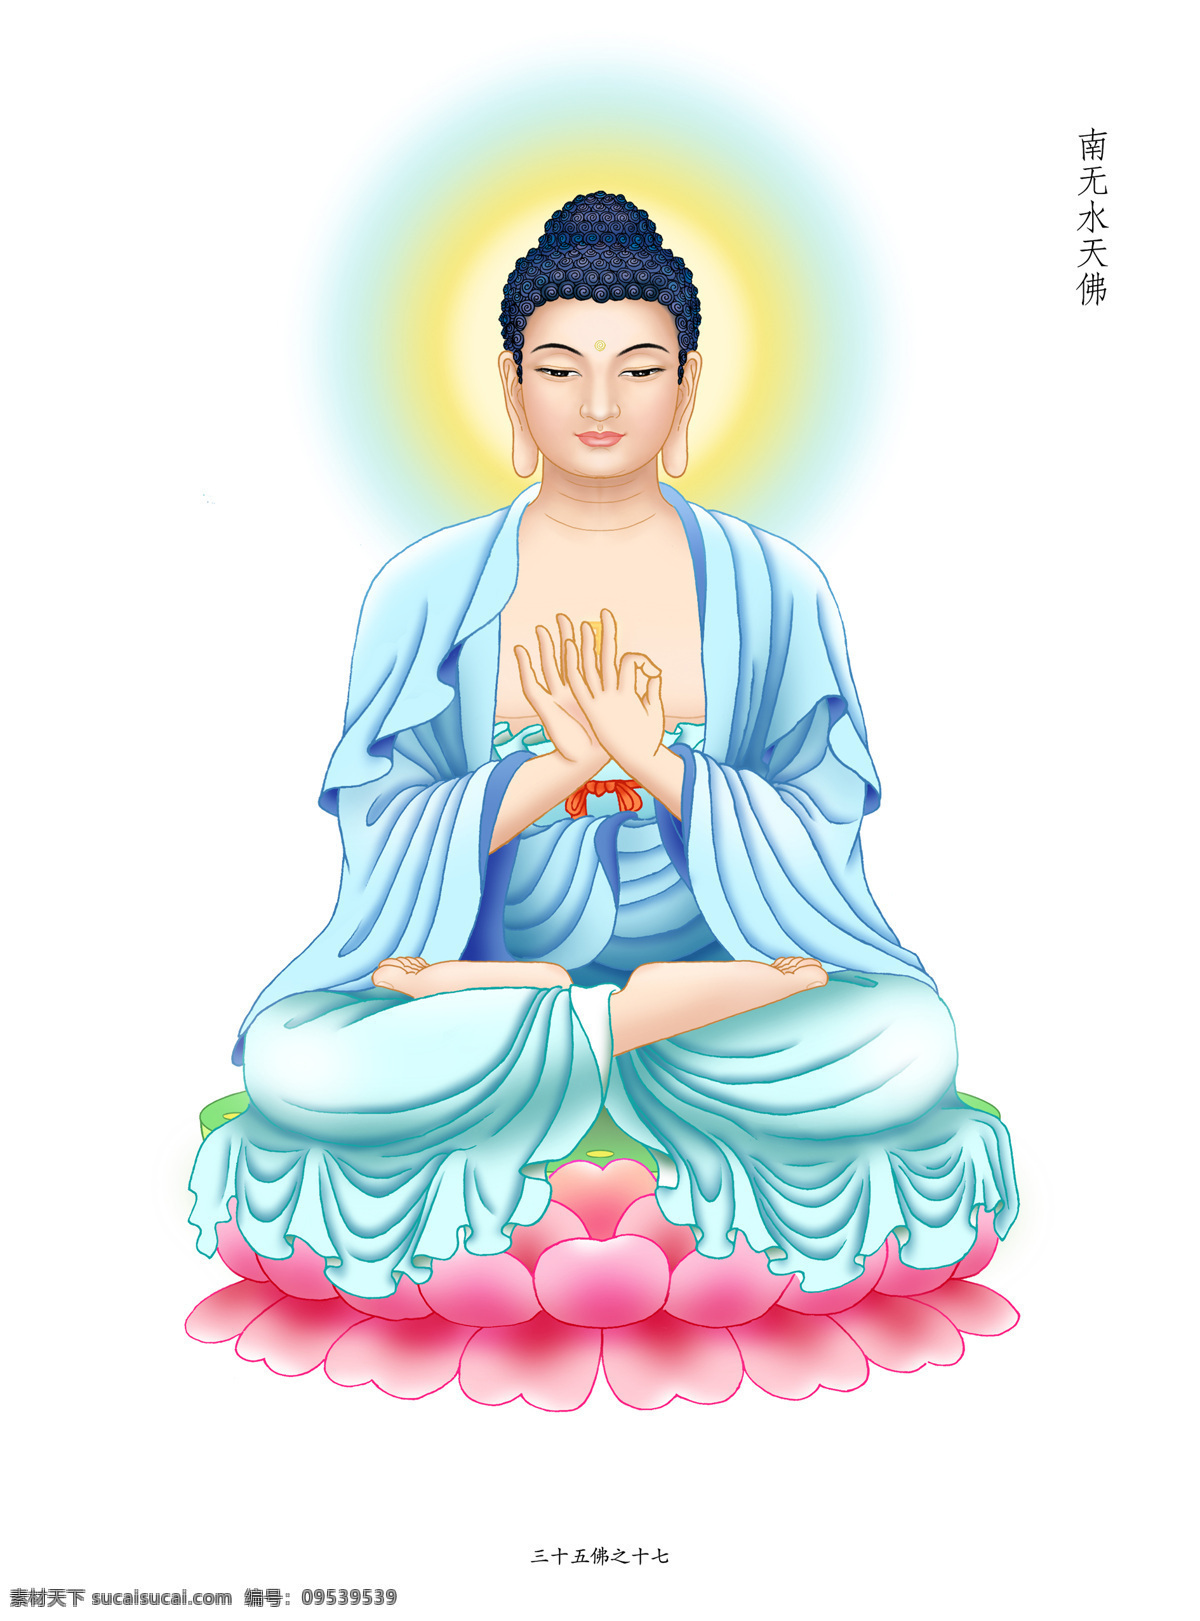 水天佛 佛教 佛 佛画 画佛 造像 八十八佛 文化艺术 宗教信仰